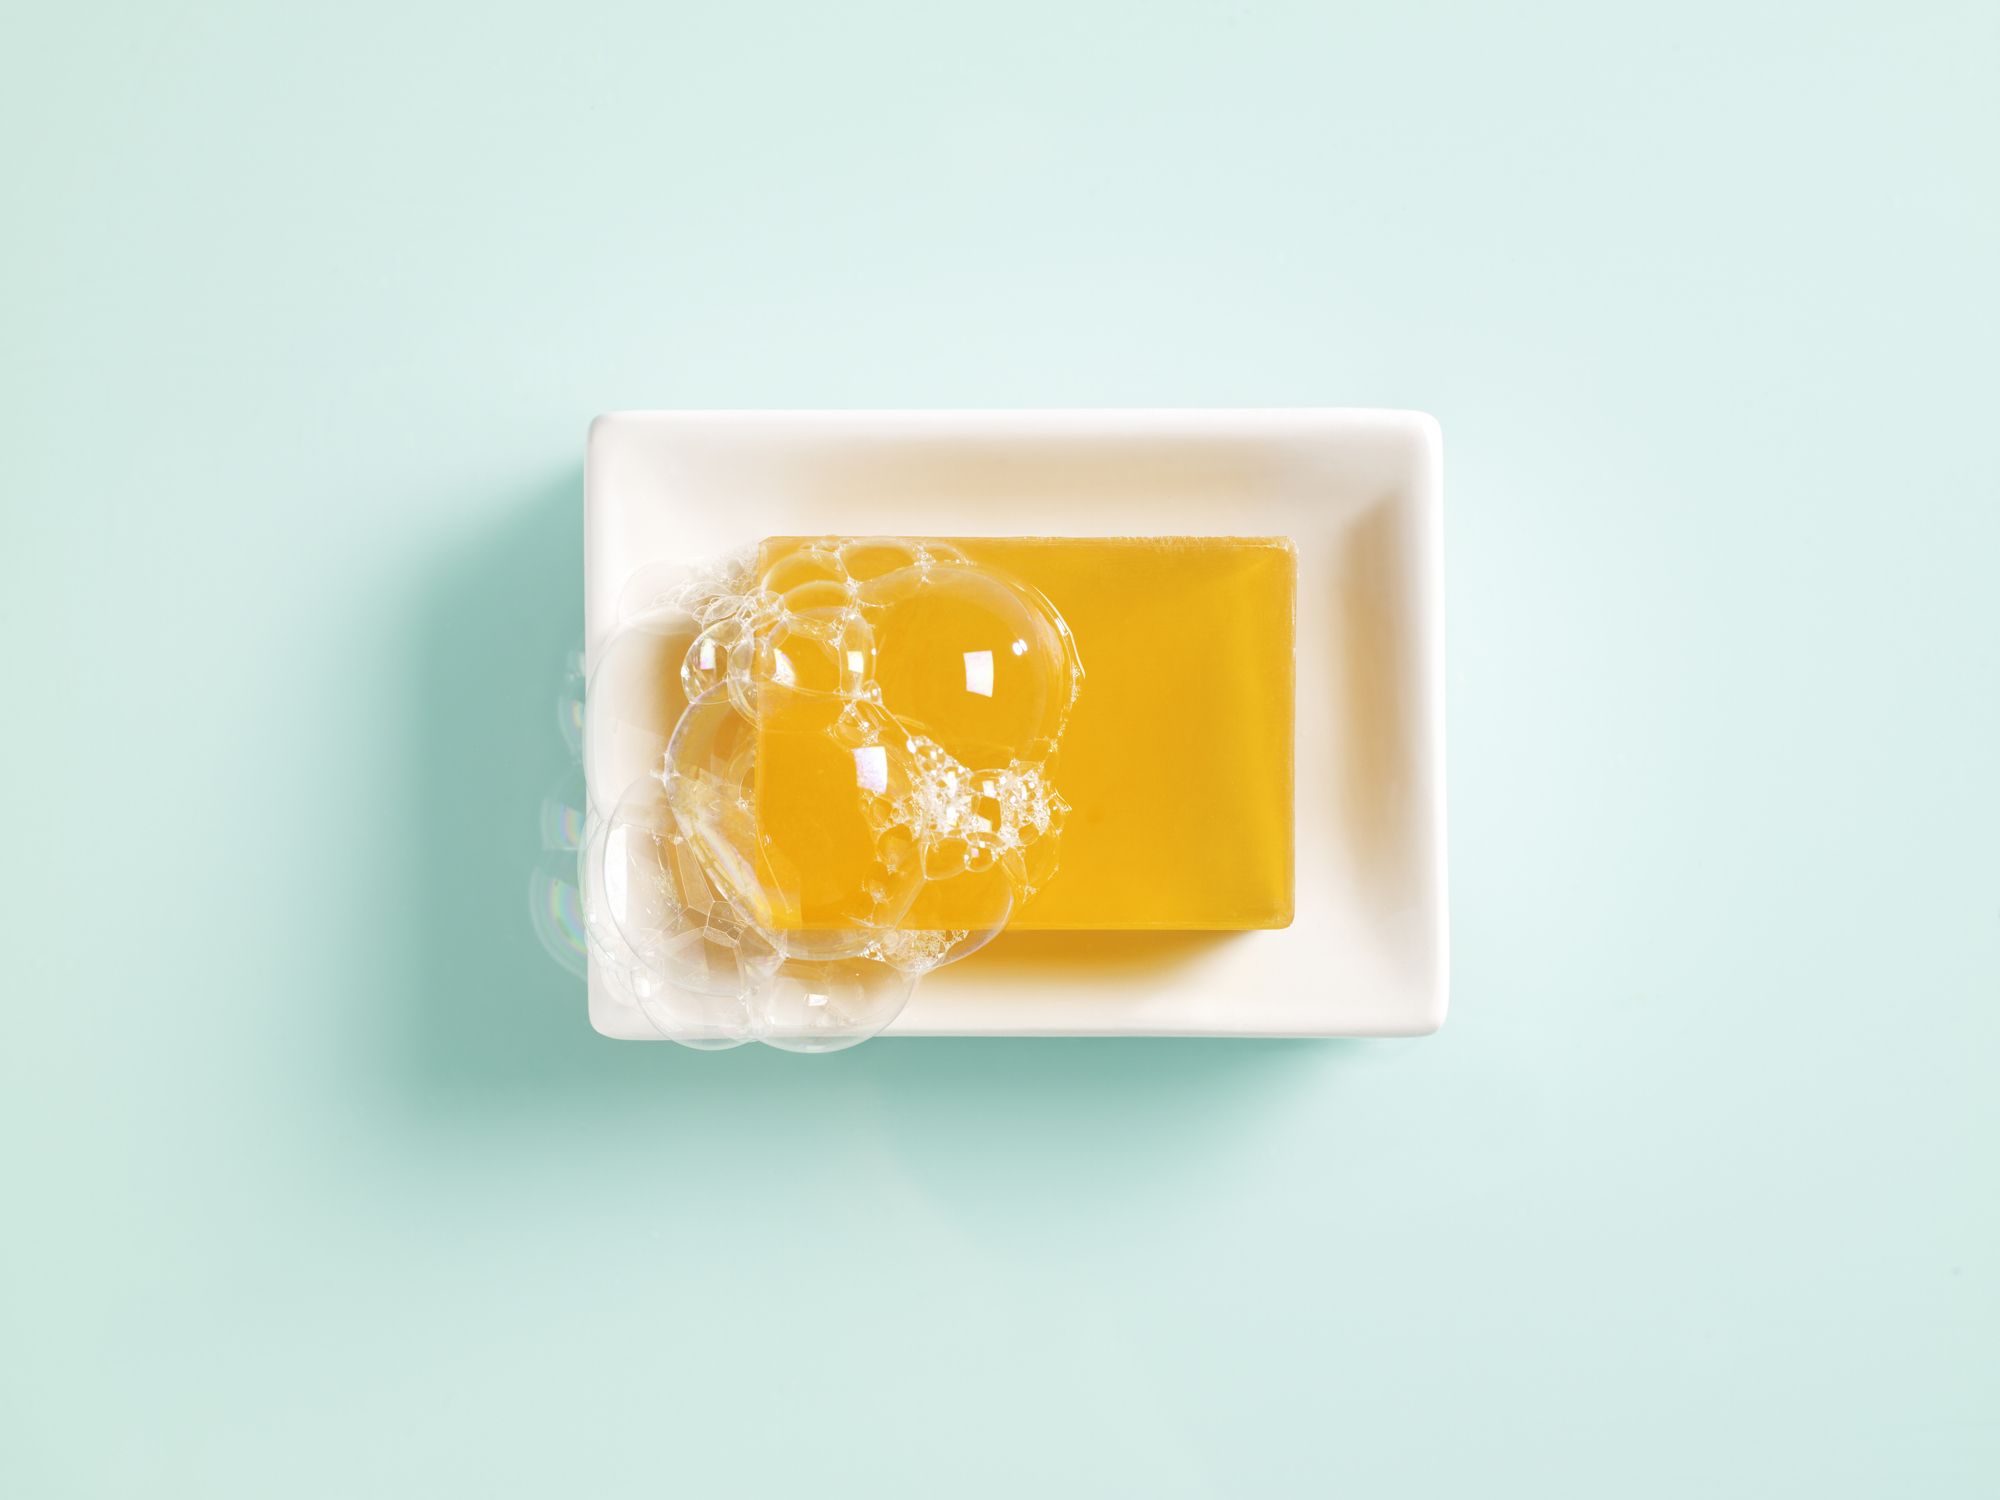 orange soap in a dish